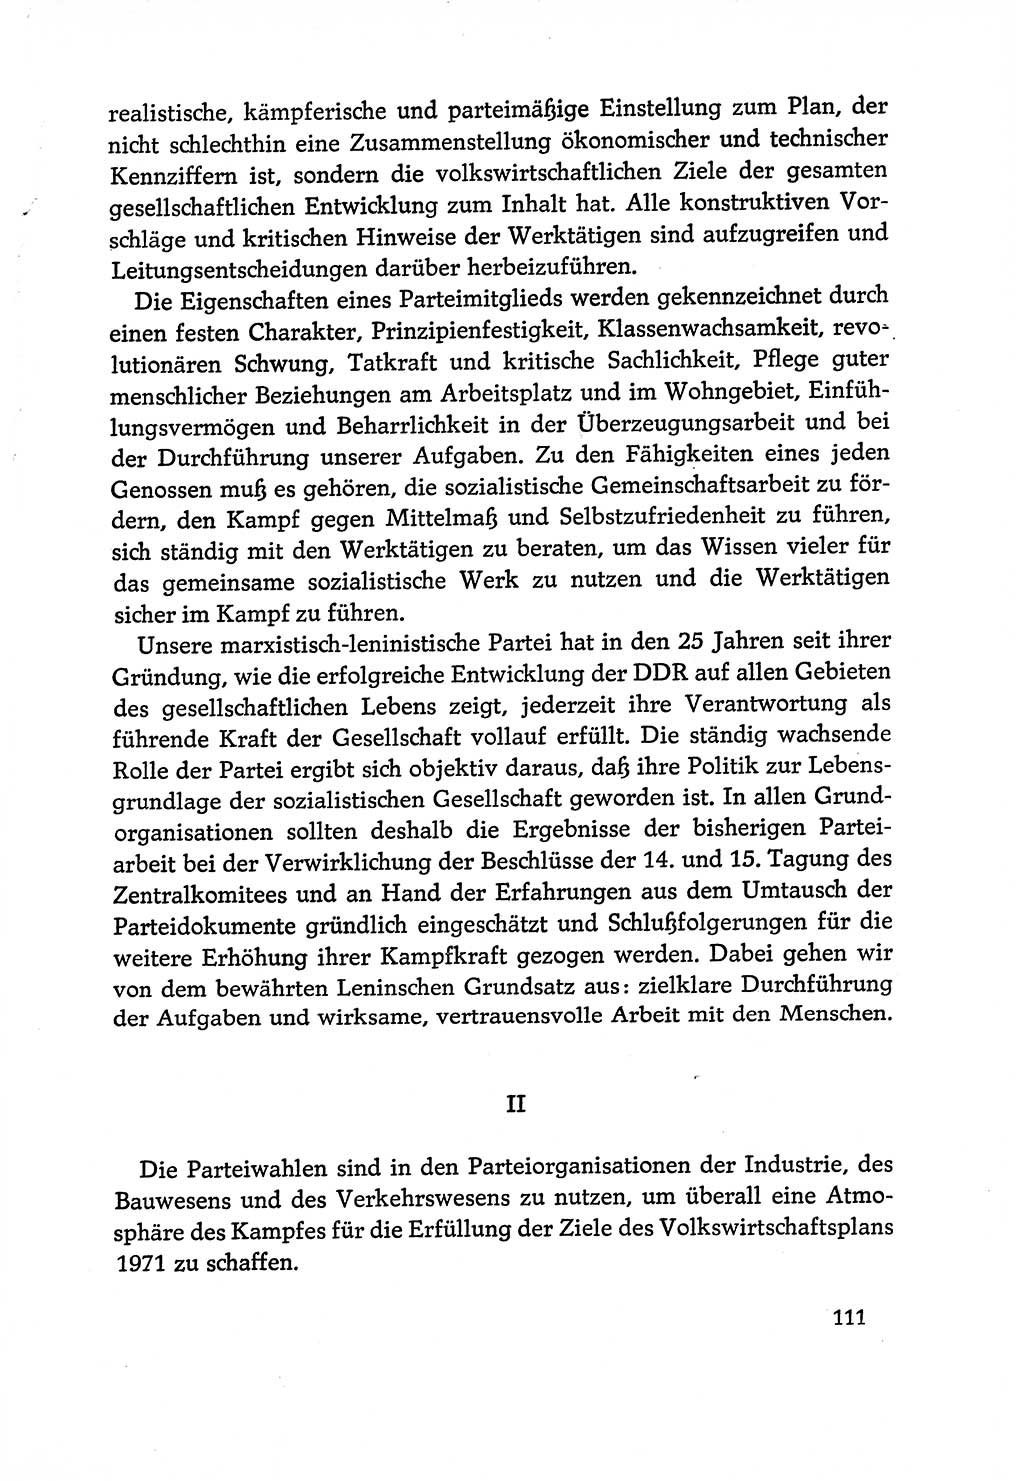 Dokumente der Sozialistischen Einheitspartei Deutschlands (SED) [Deutsche Demokratische Republik (DDR)] 1970-1971, Seite 111 (Dok. SED DDR 1970-1971, S. 111)